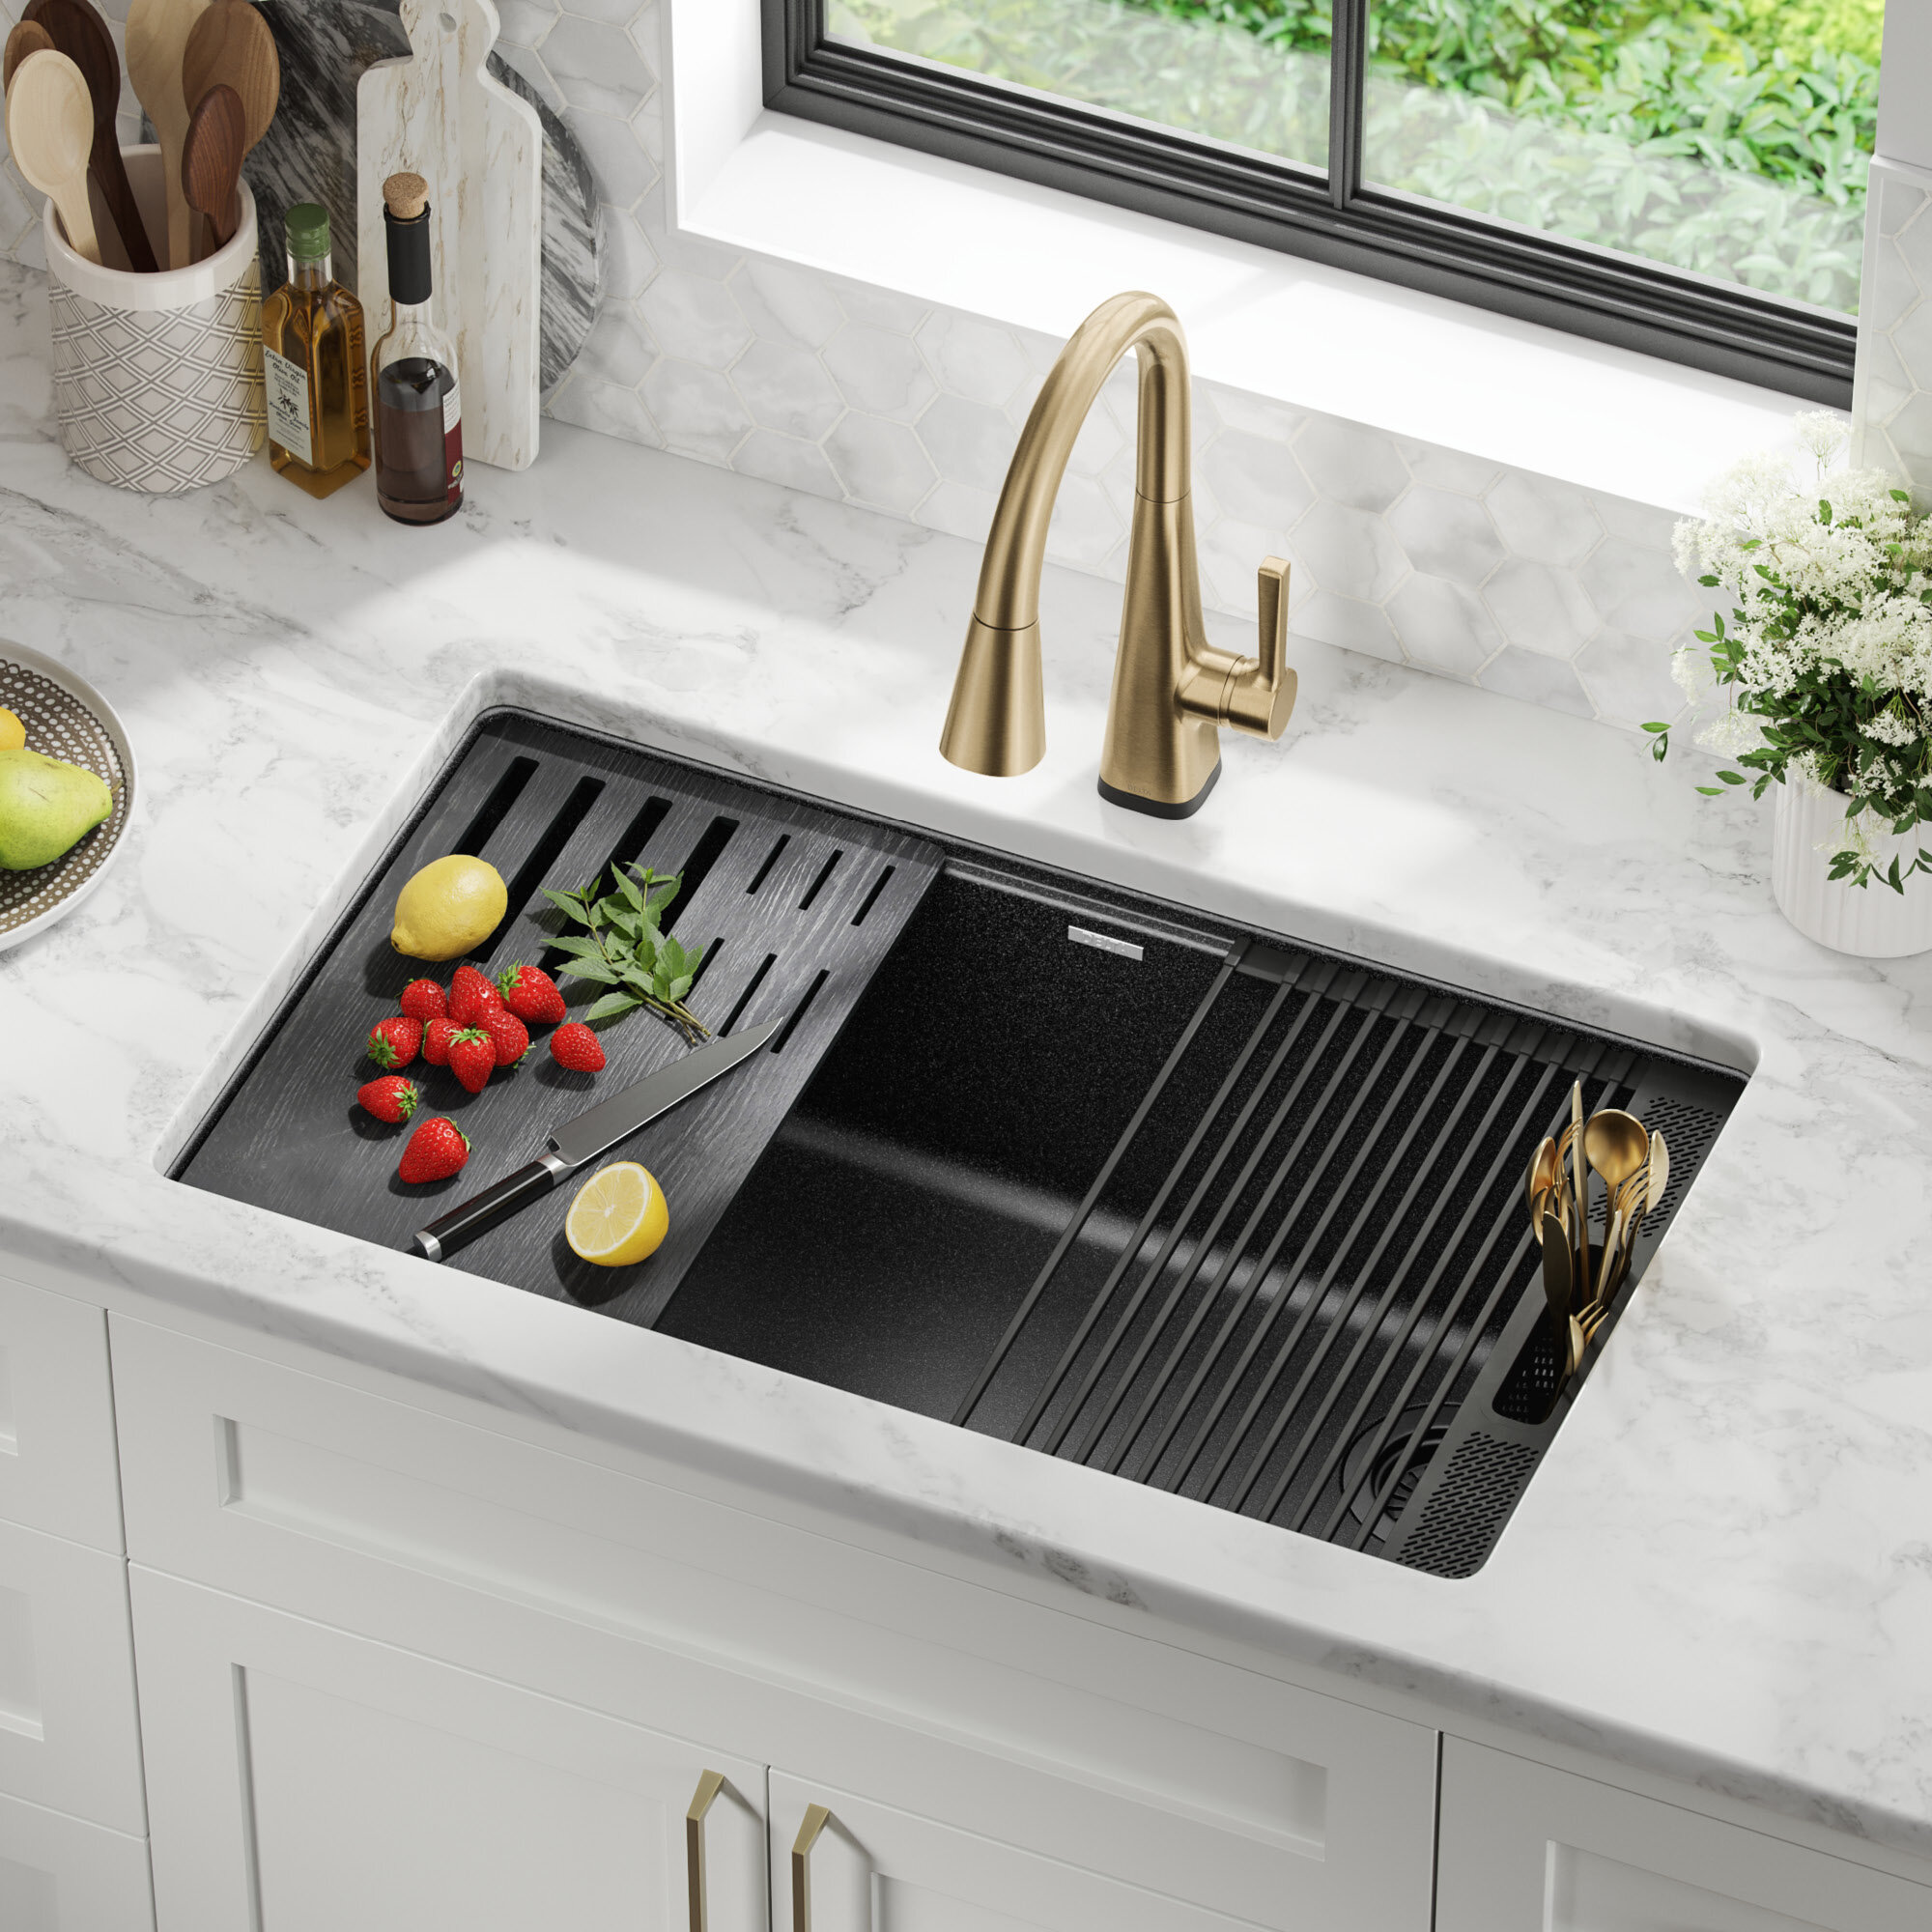 32” Granite Composite Workstation Kitchen Sink Undermount Single